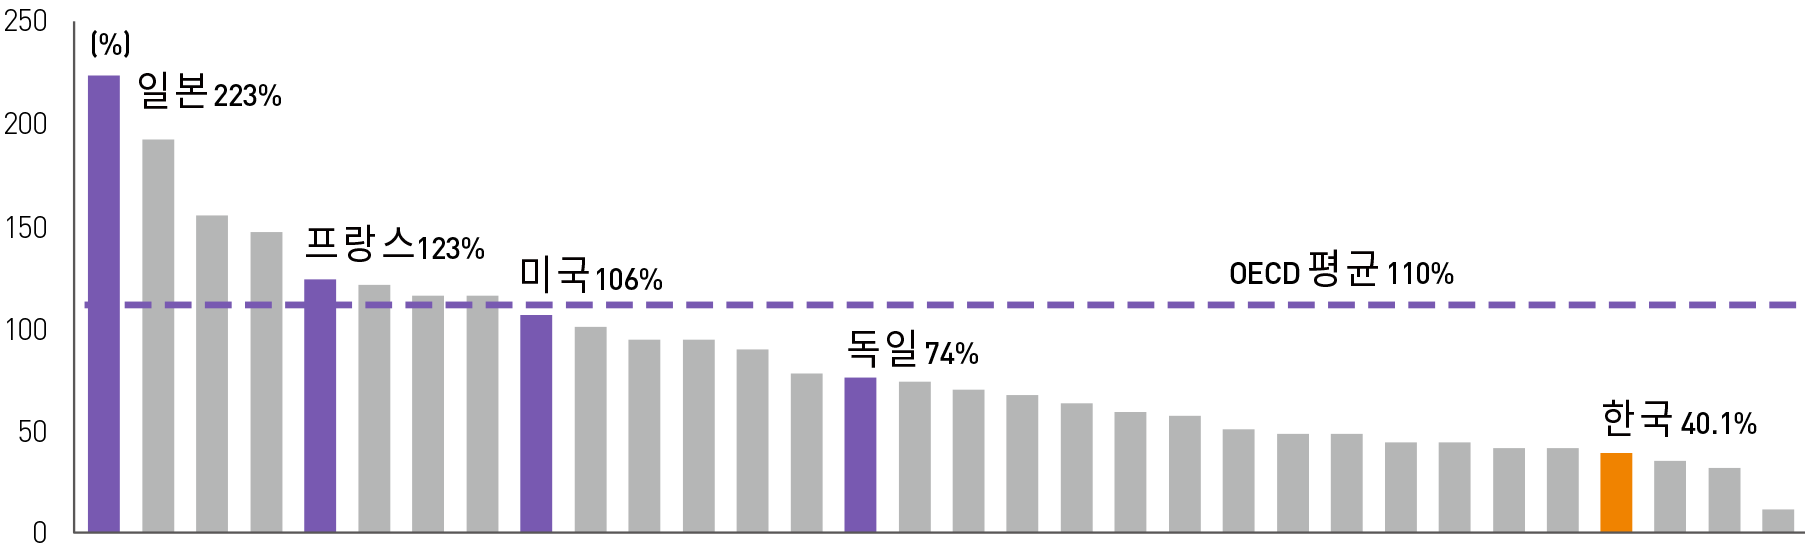 OECD 국가별 GDP 대비 일반정부 부채(D2) 비율(’17년 기준) 그래프 이미지